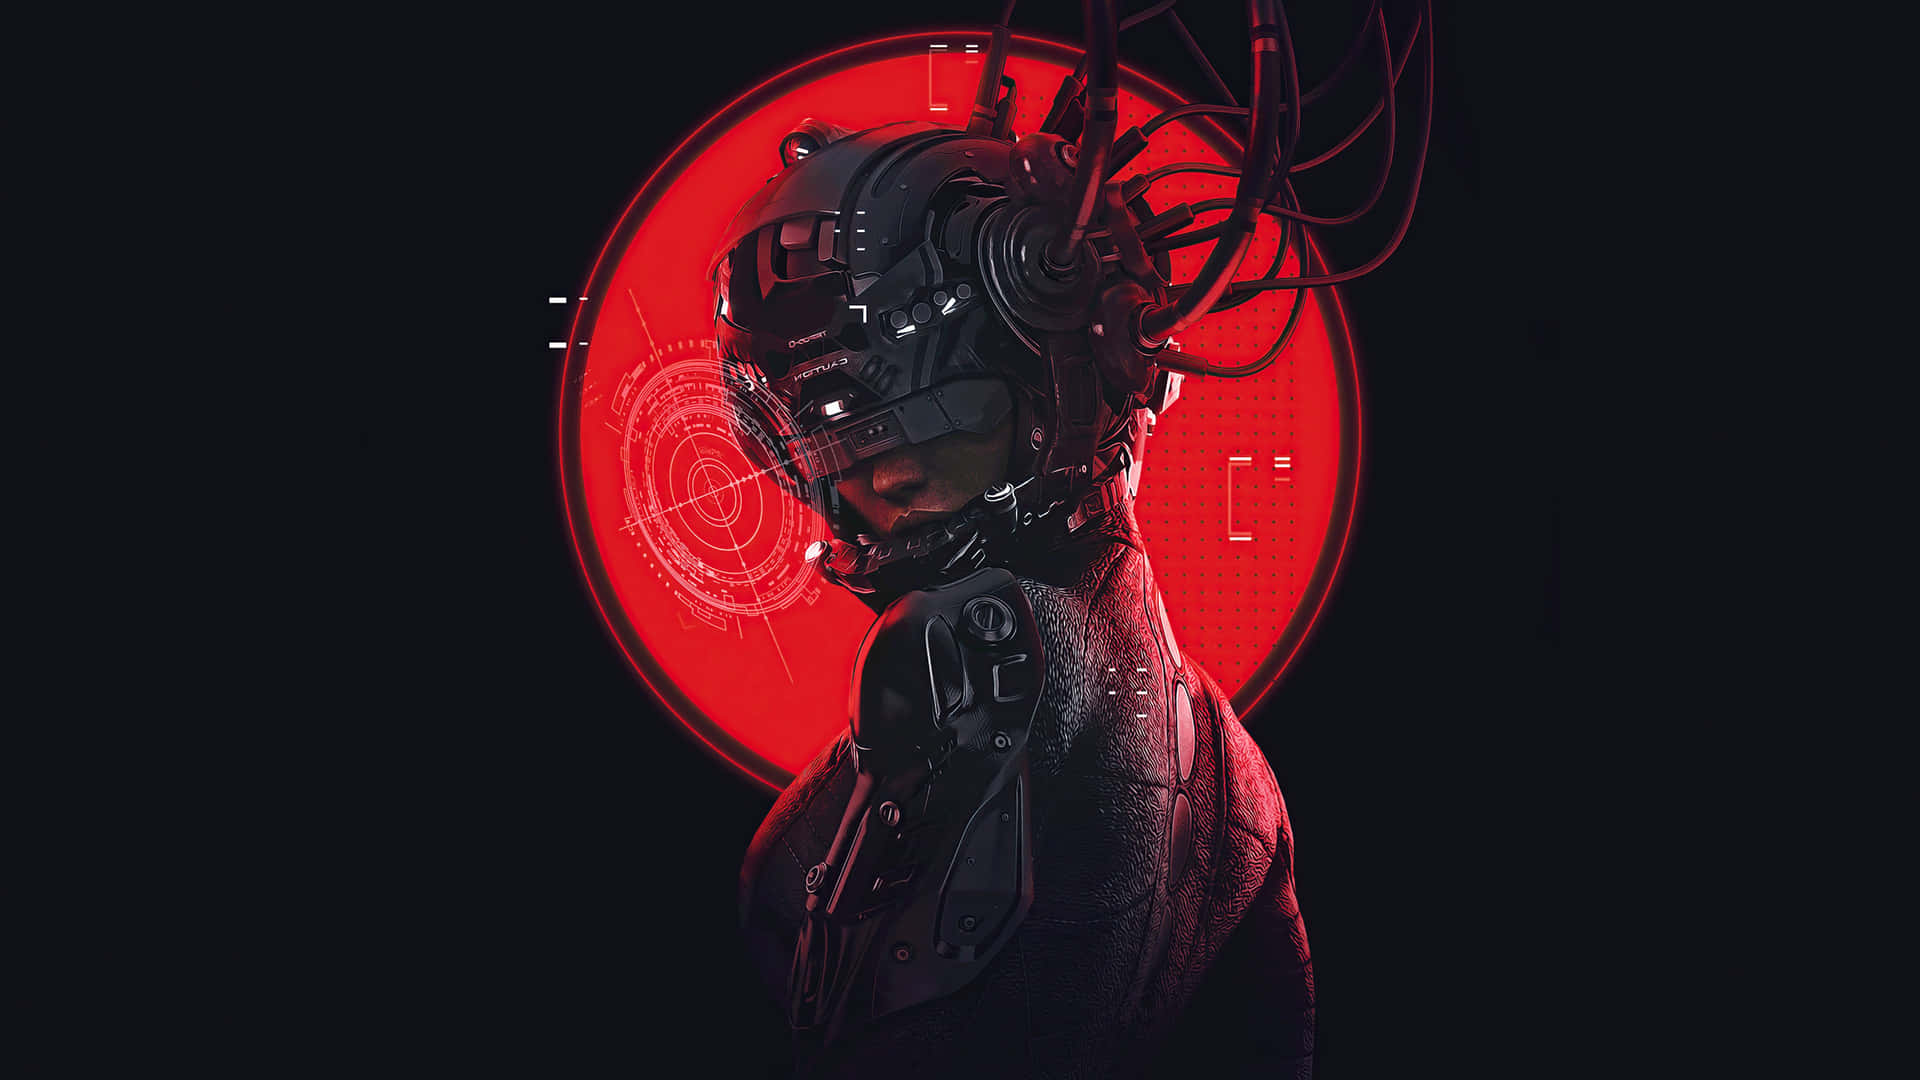 Wagdich In Das Cyberpunk-universum